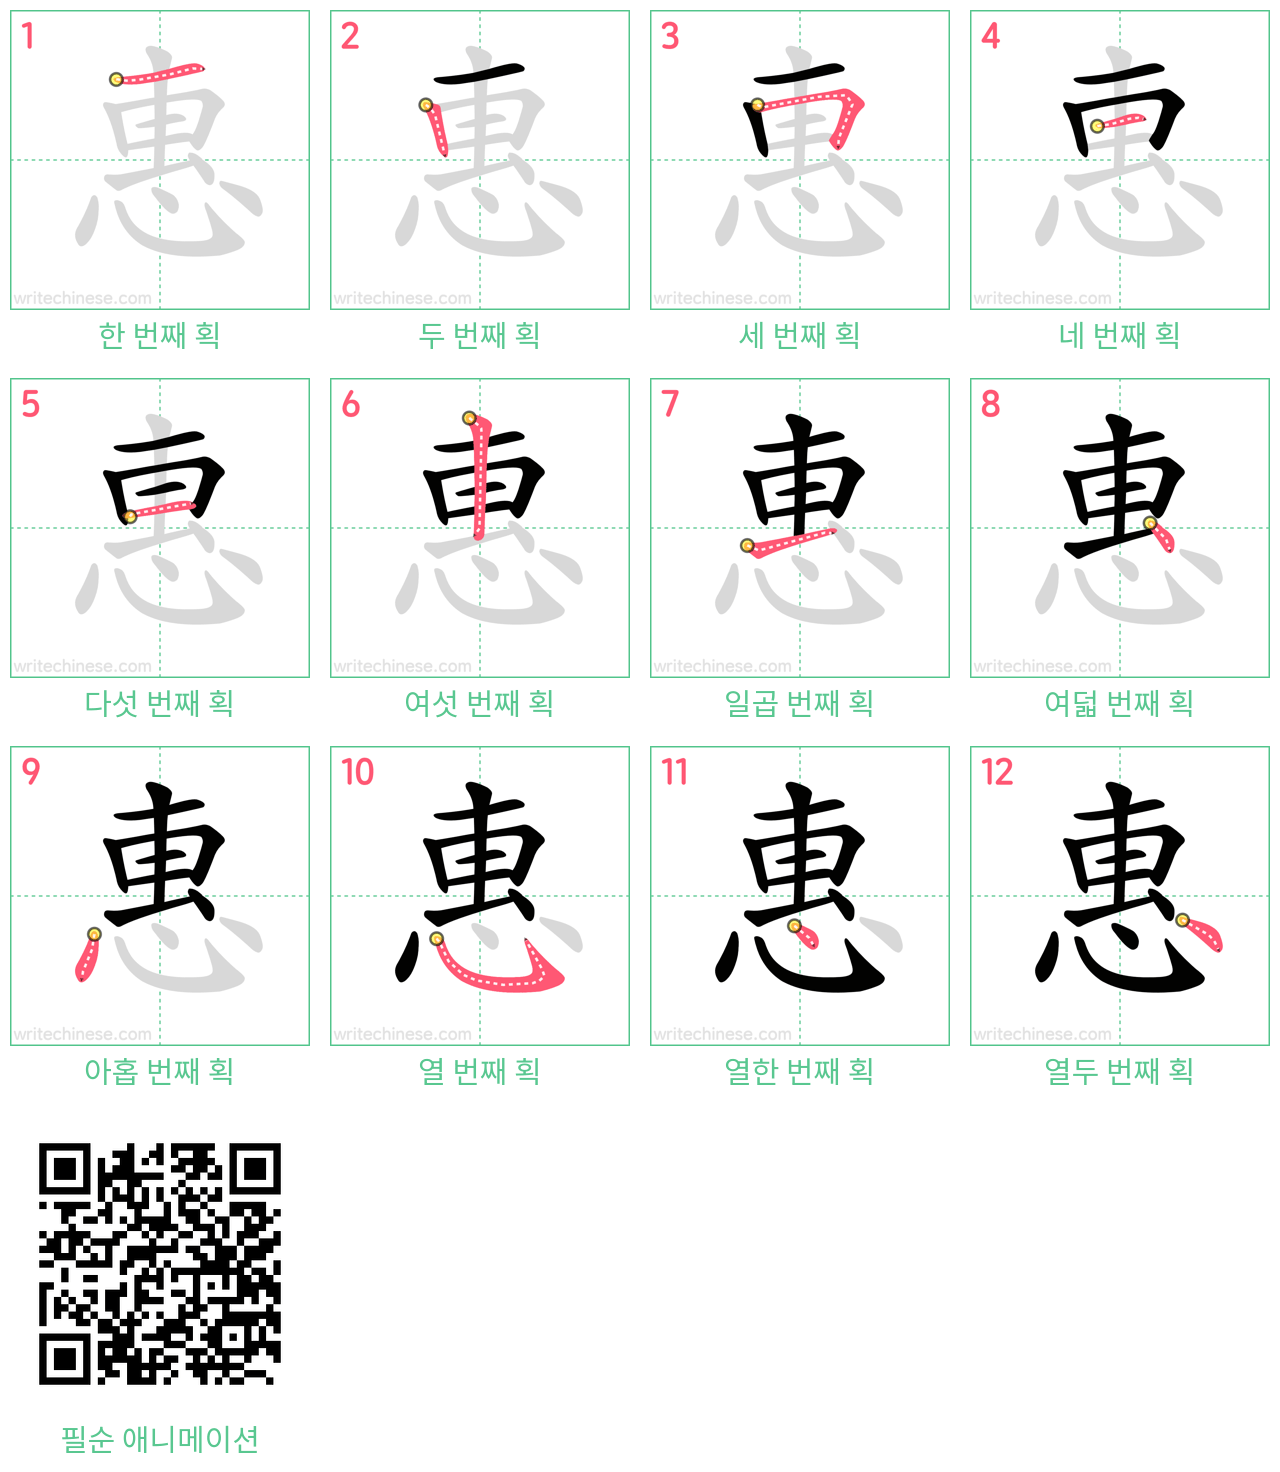 惠 step-by-step stroke order diagrams